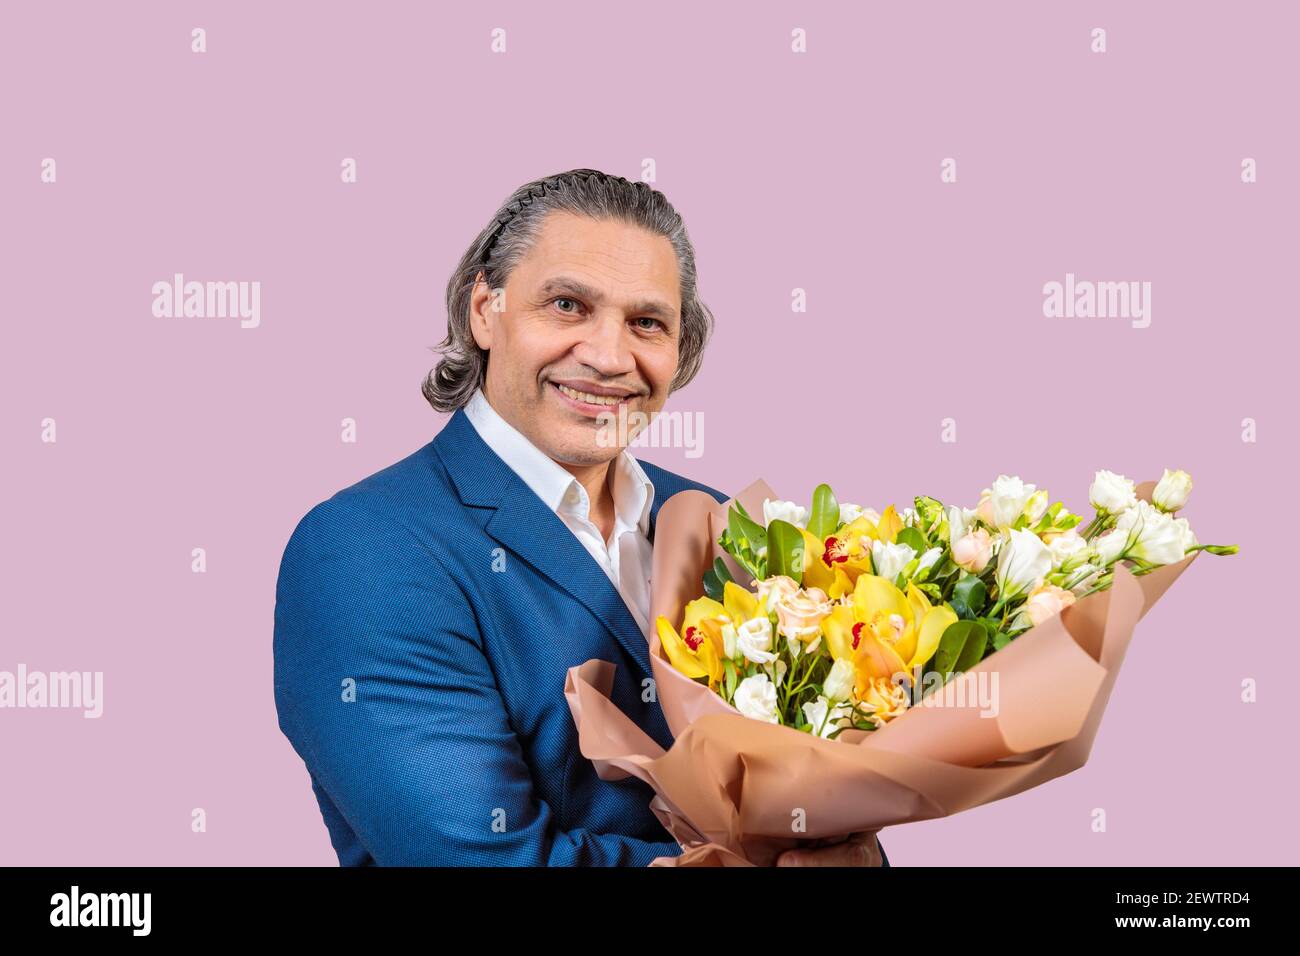 Homme souriant de 50 ans dans une veste bleue avec un bouquet de fleurs sur un fond uniforme. Cheveux longs gris Banque D'Images